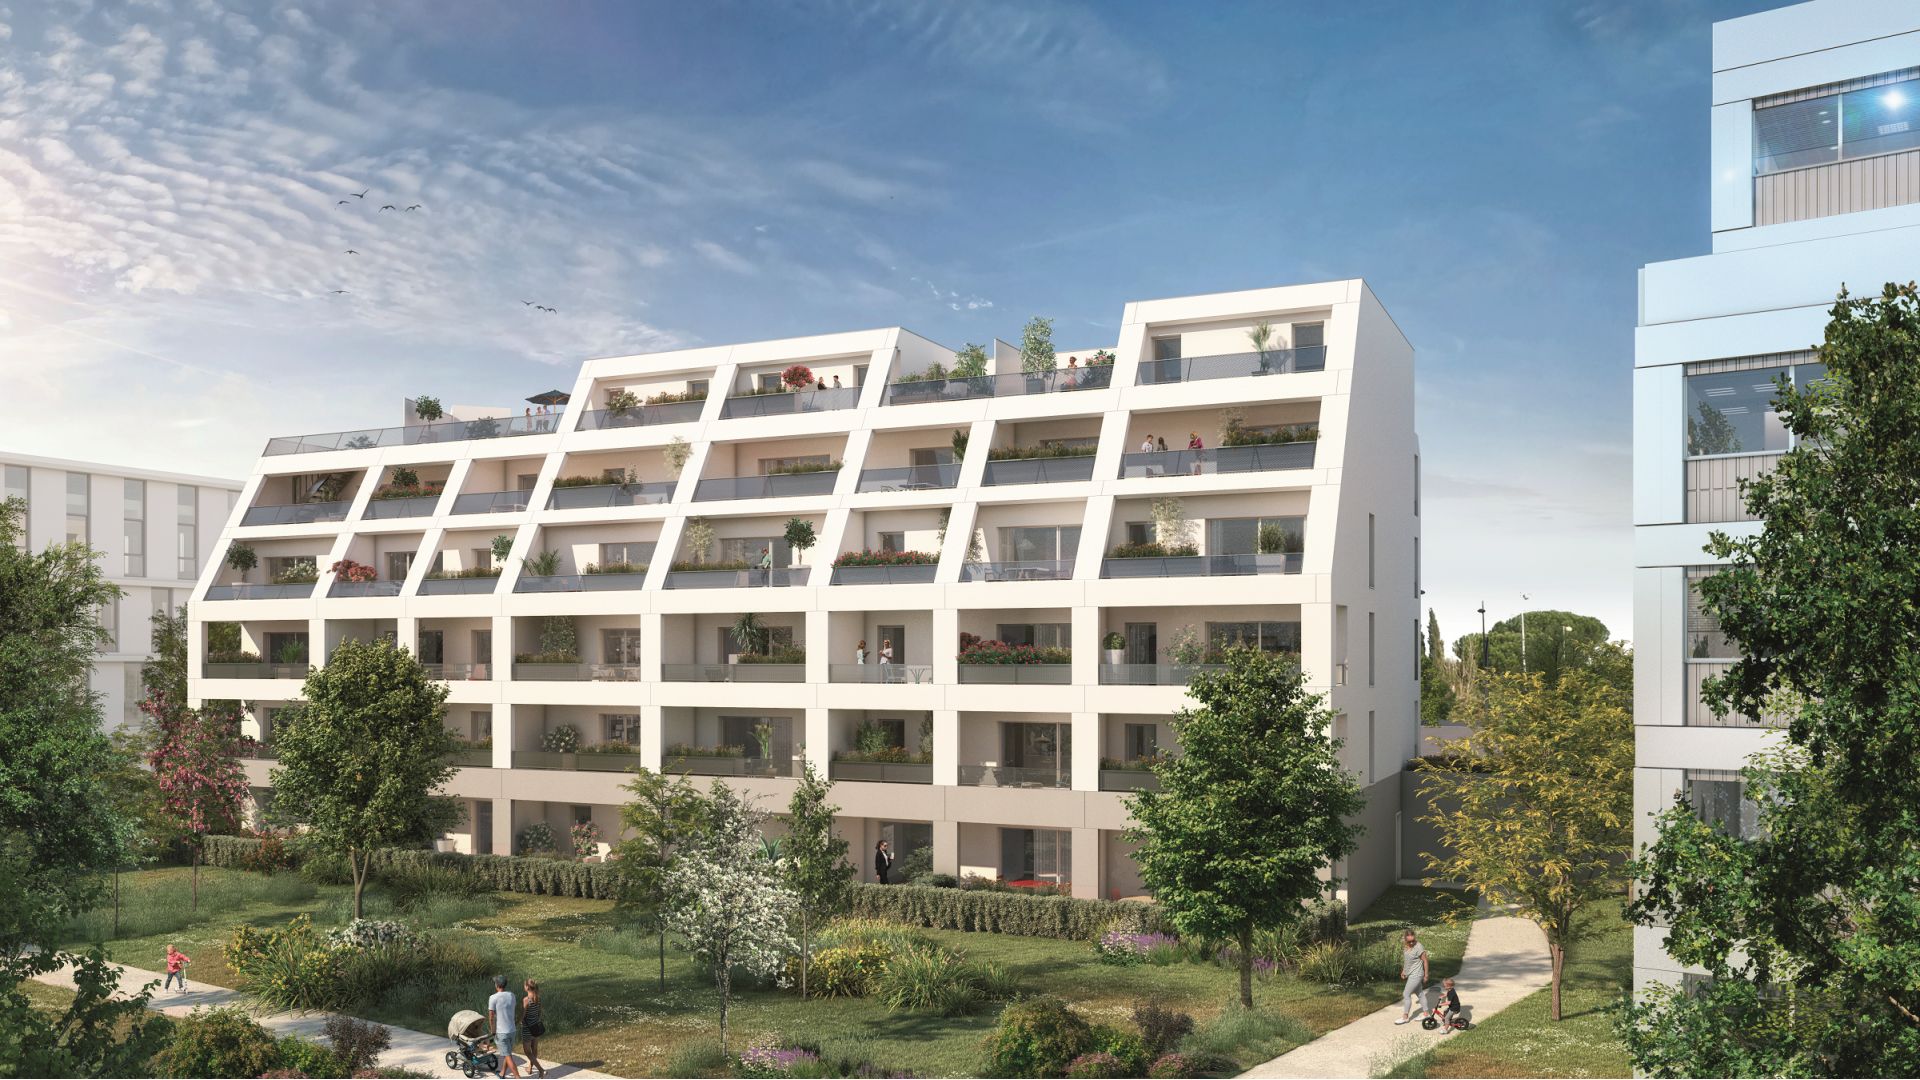 Greencity immobilier - achat appartements neufs du T1Bis au T6Duplex - Résidence MeetCity - 31700 Beauzelle - vue jardin